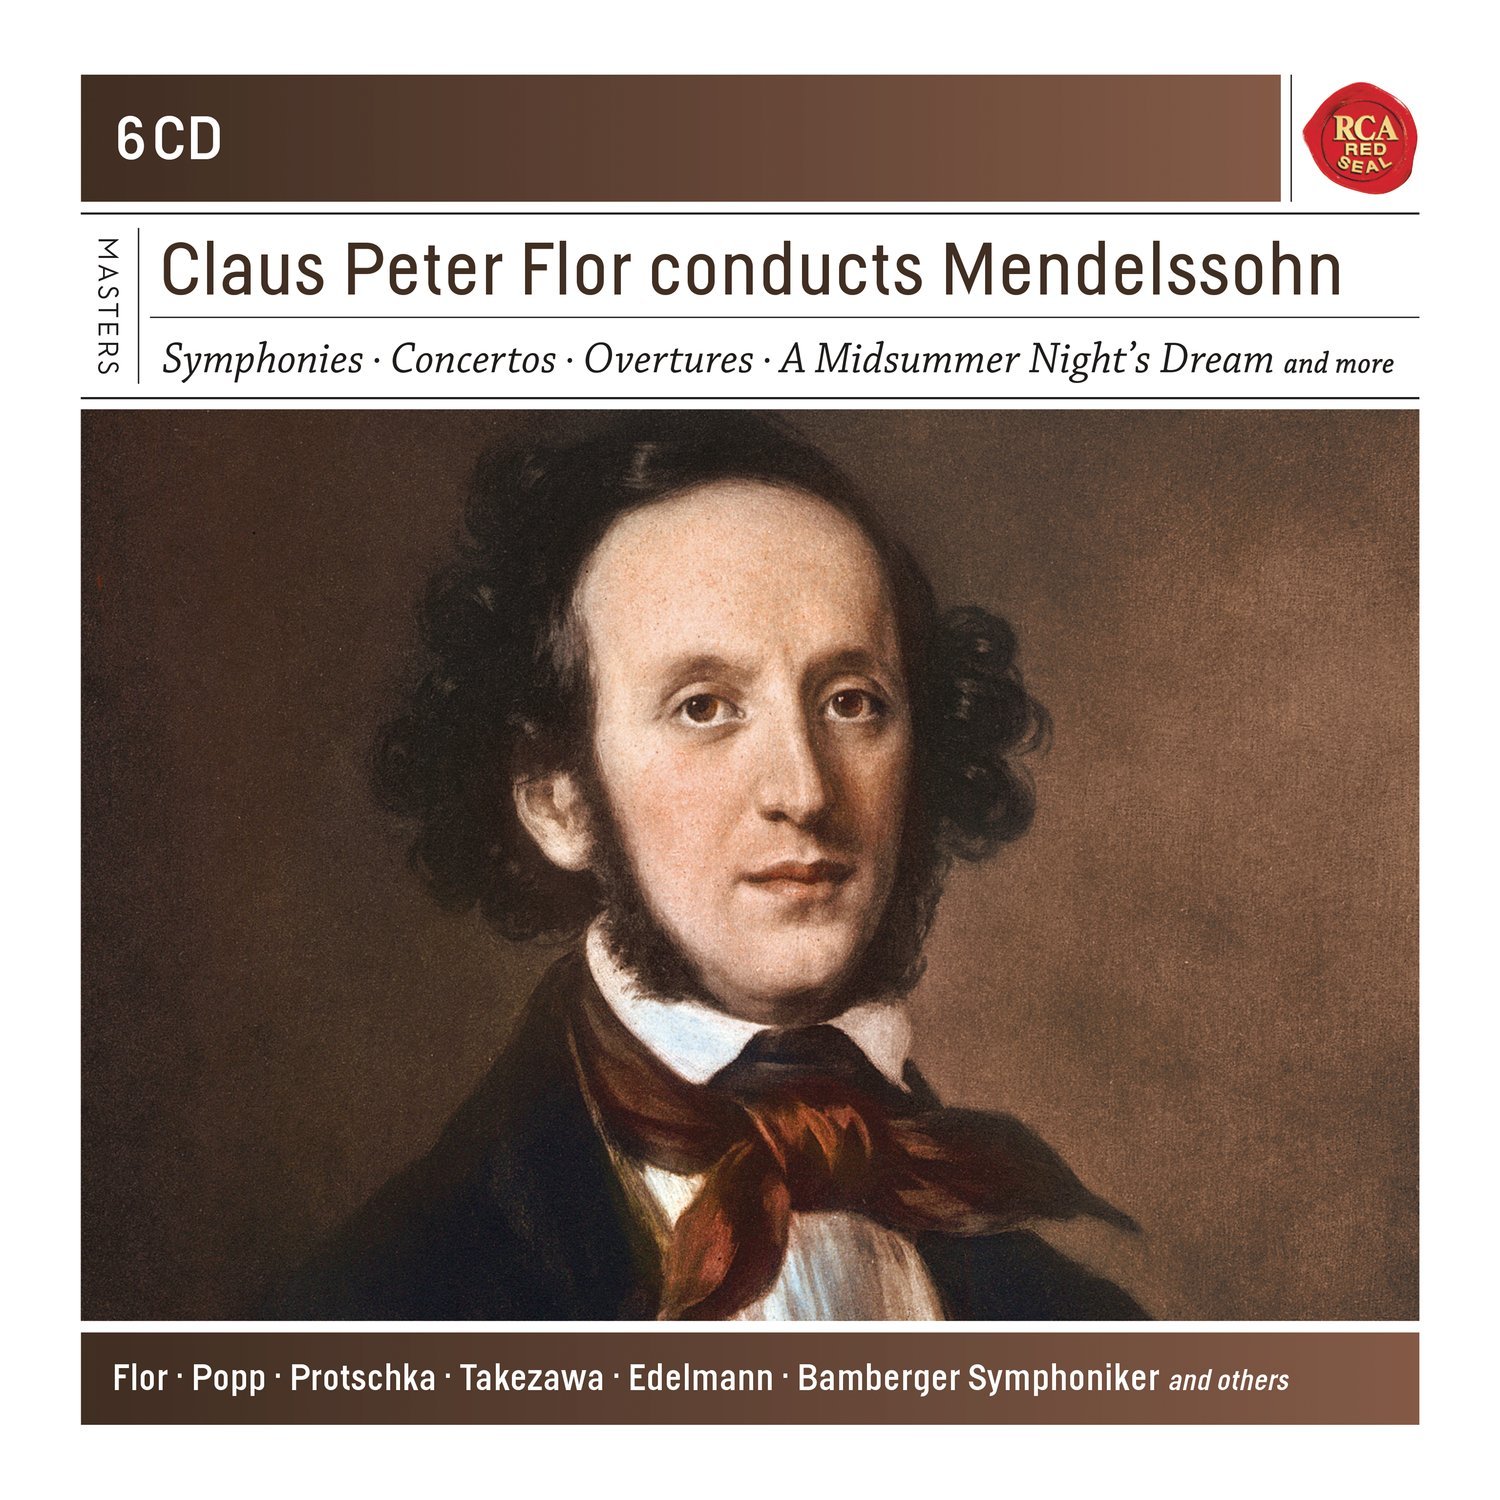 Claus Peter Flor Conducts Mendelssohn - Box set | Claus Peter Flor